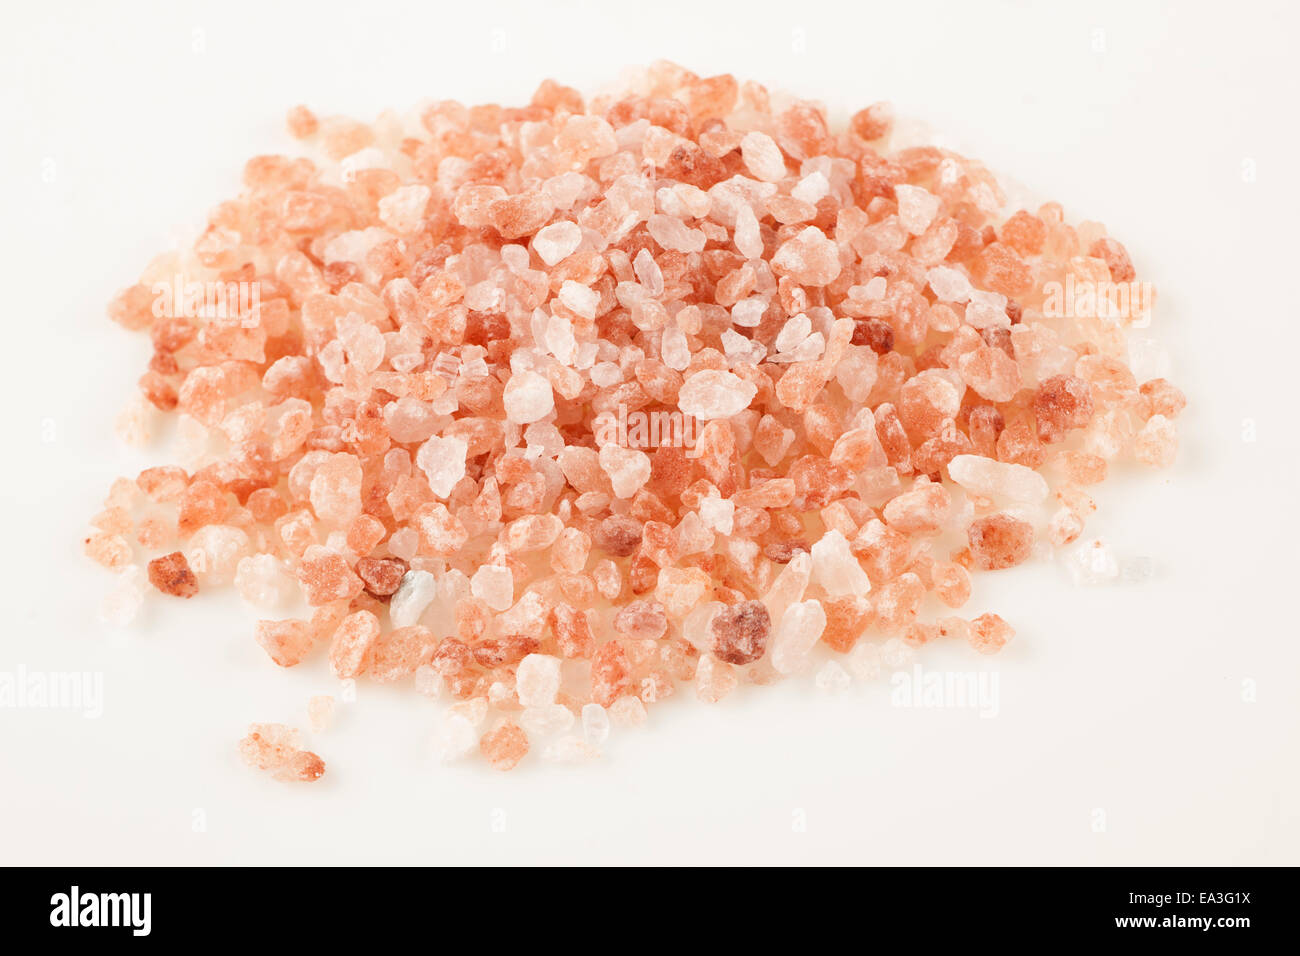 Pile of Himalayan coarse pink salt Stock Photo